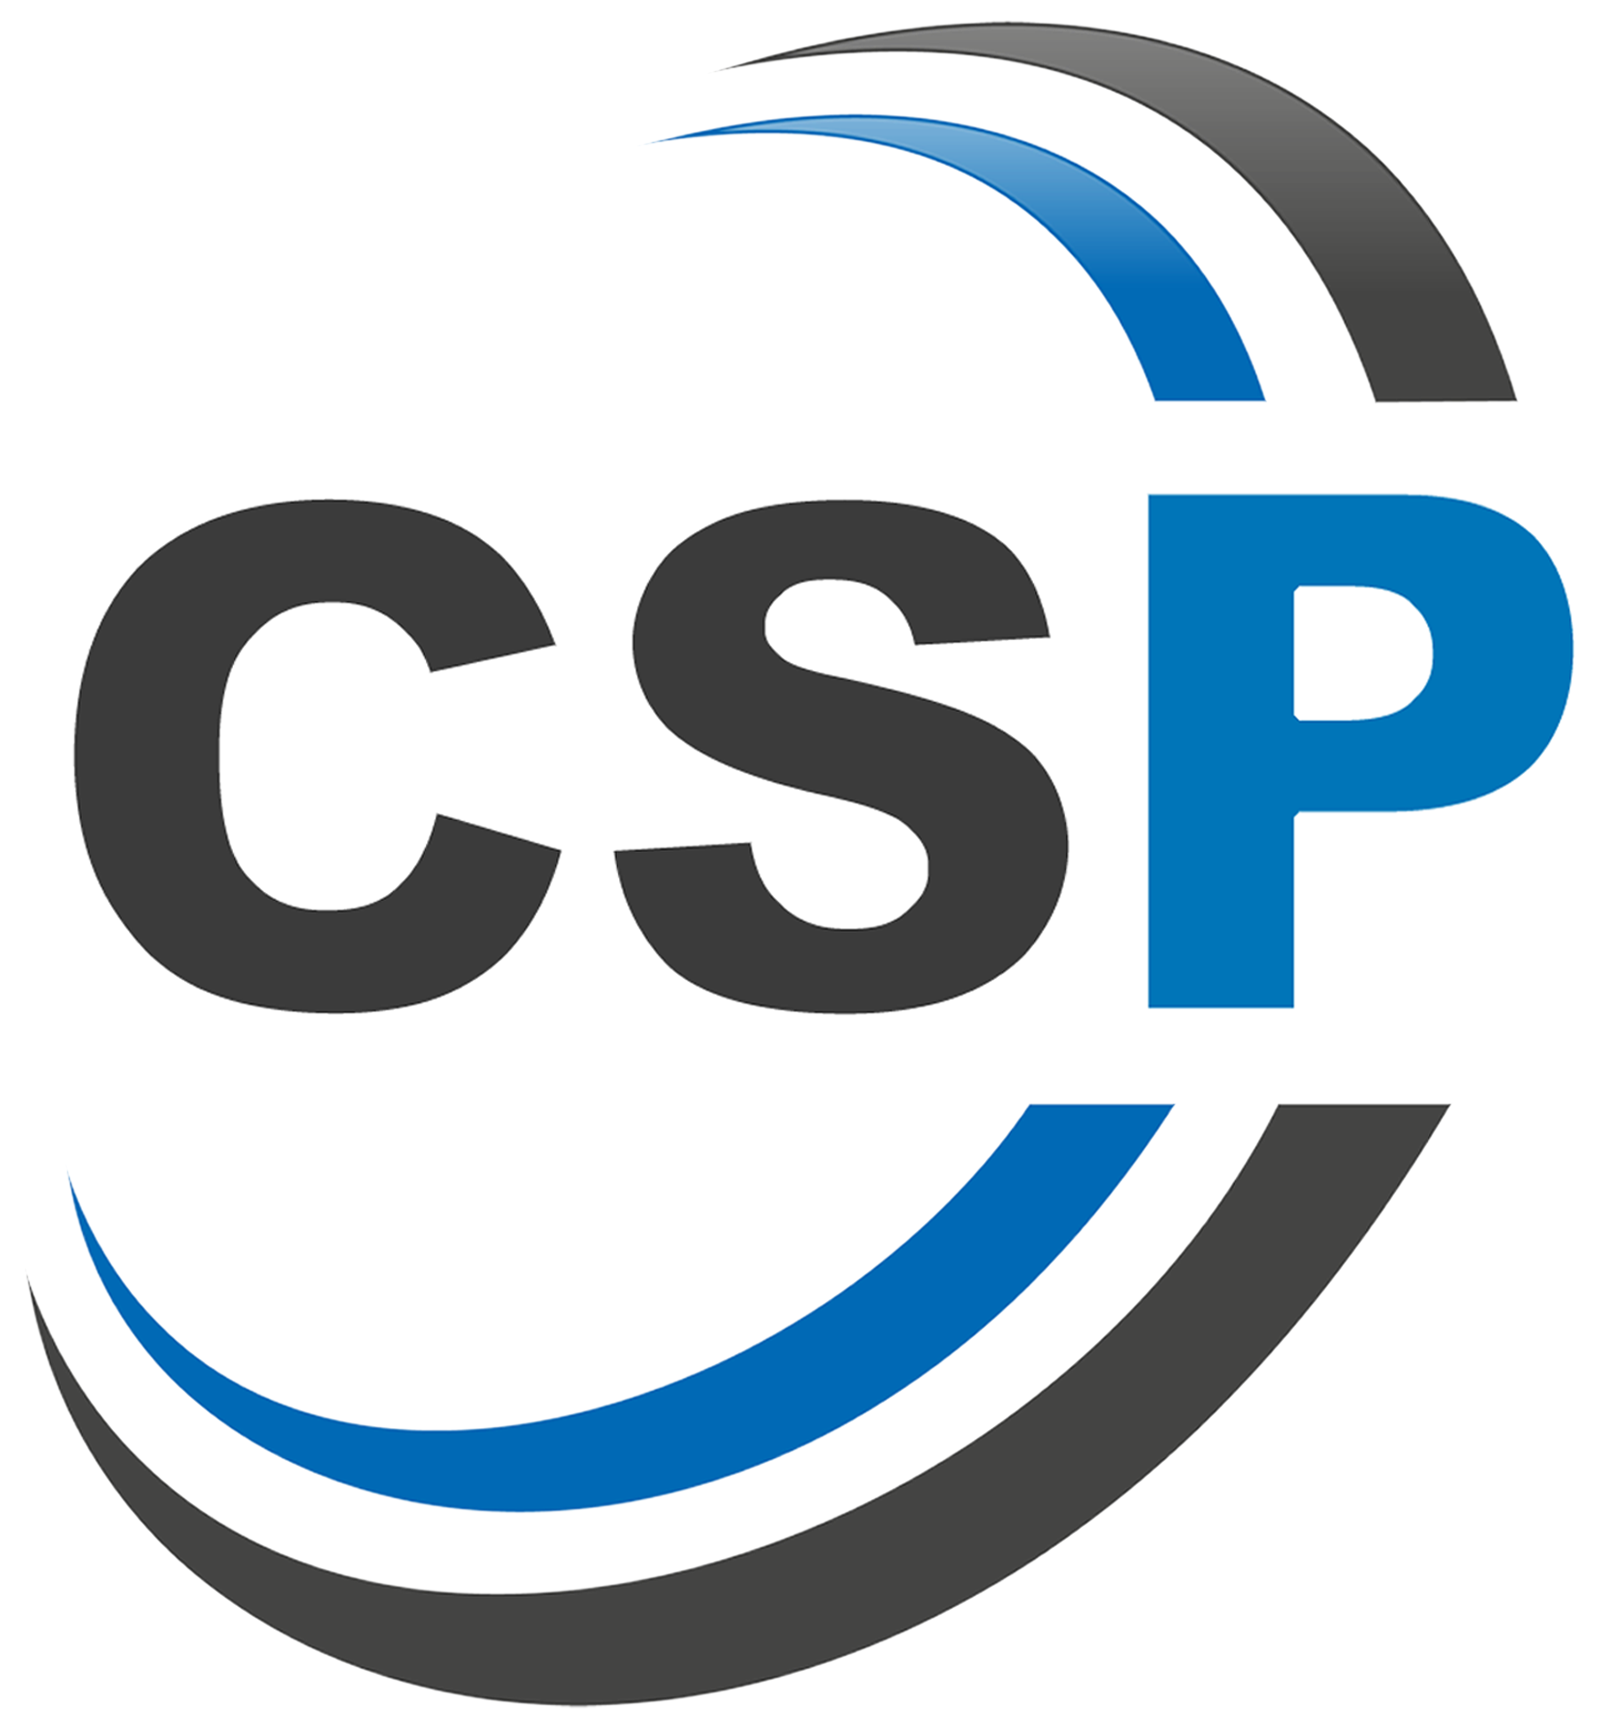 CSP_Logo[PNG]